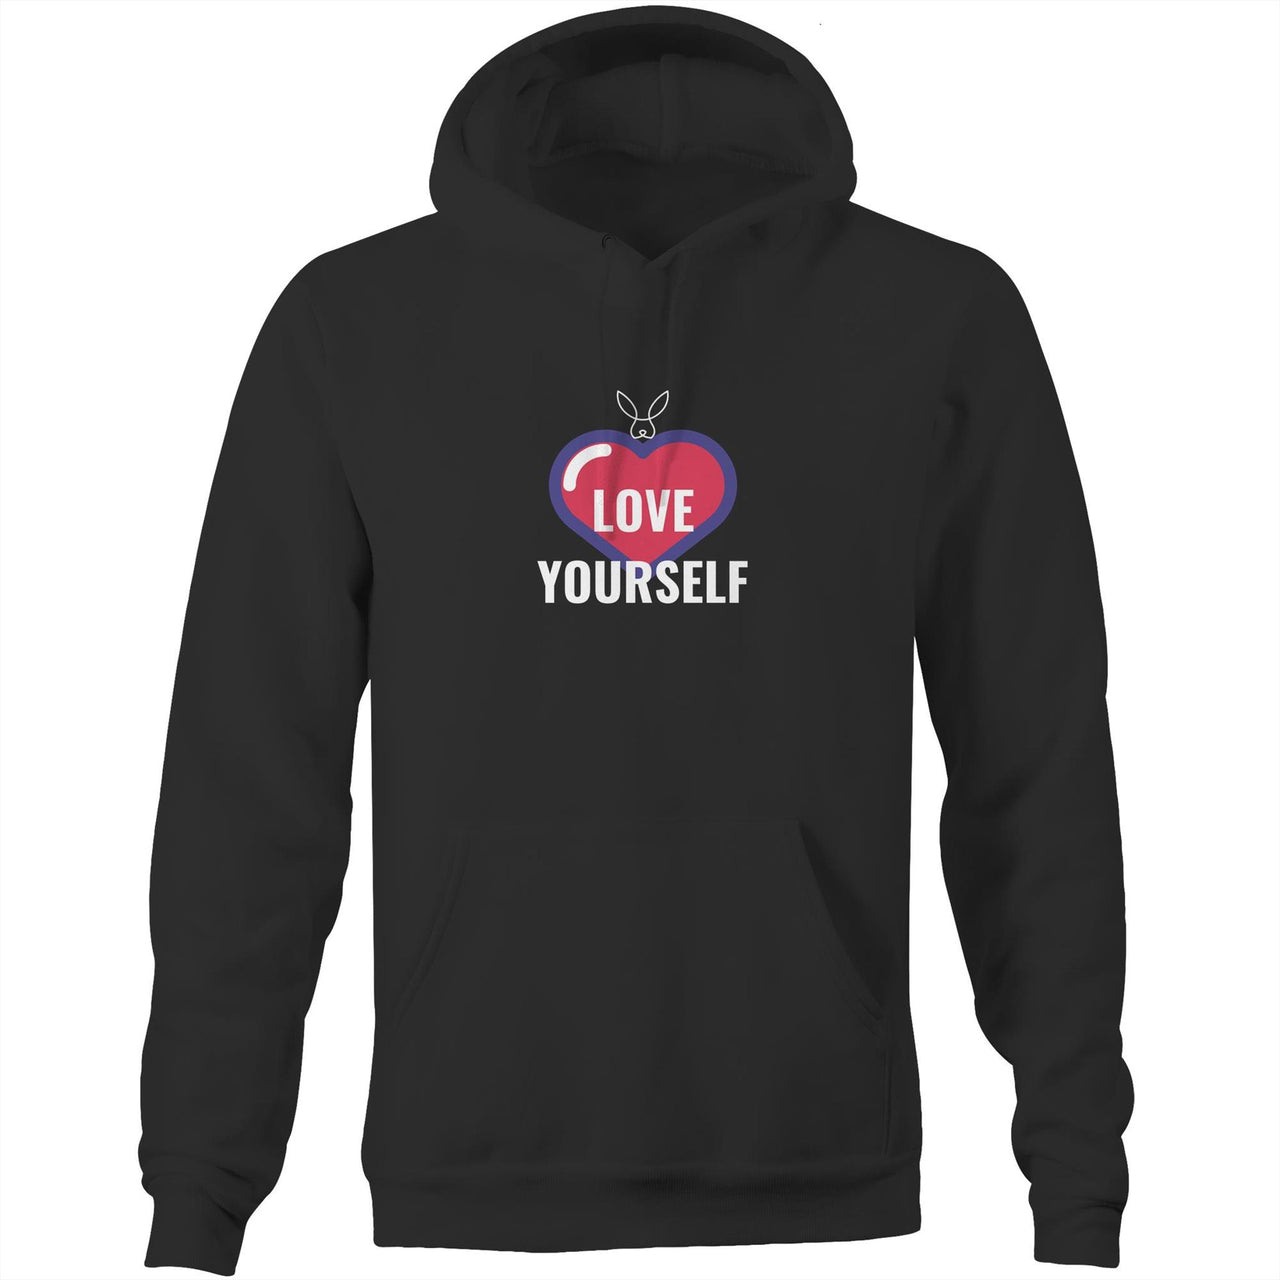 Love Yourself Pocket Hoodie Sweatshirt. unisex mens womens black